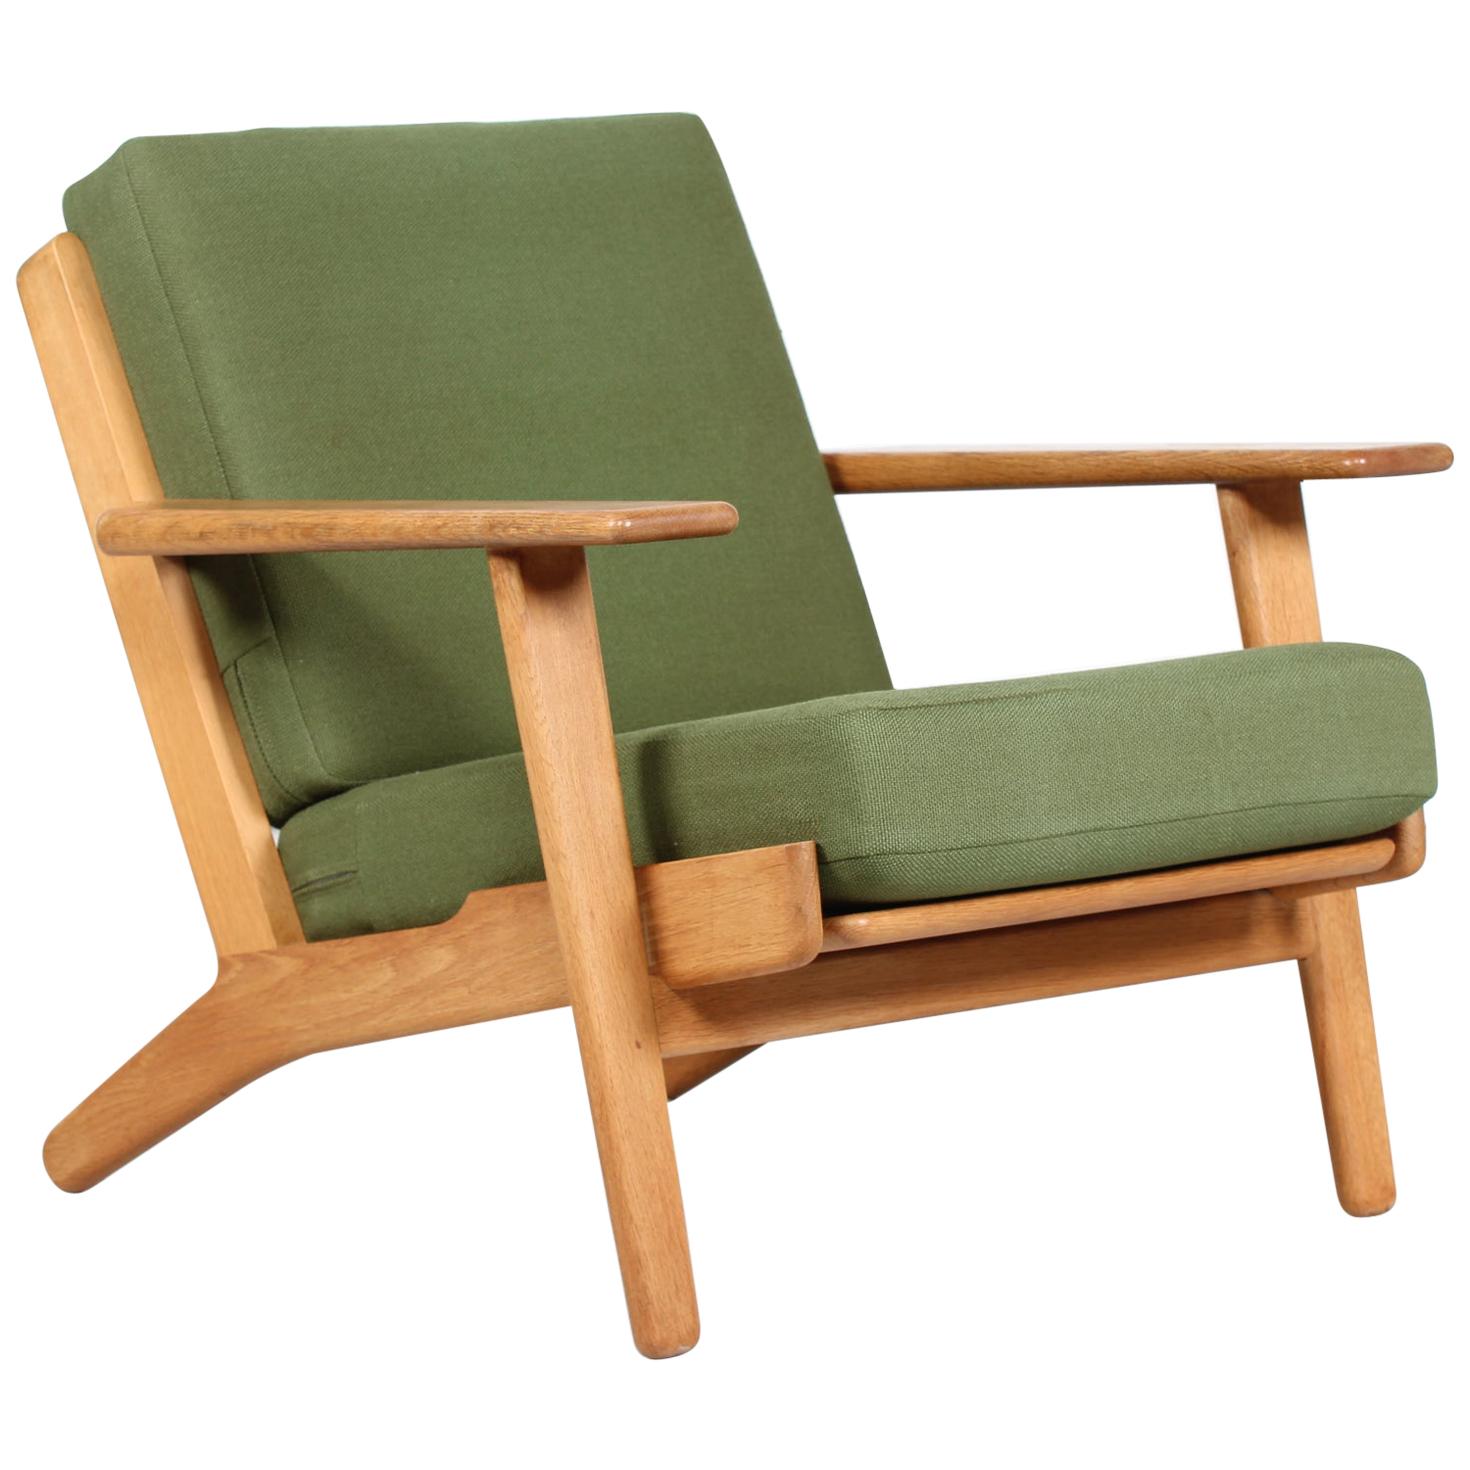 Hans J. Wegner Lounge Chair GE 290 of Oak and Green Wool by GETAMA, 1970s